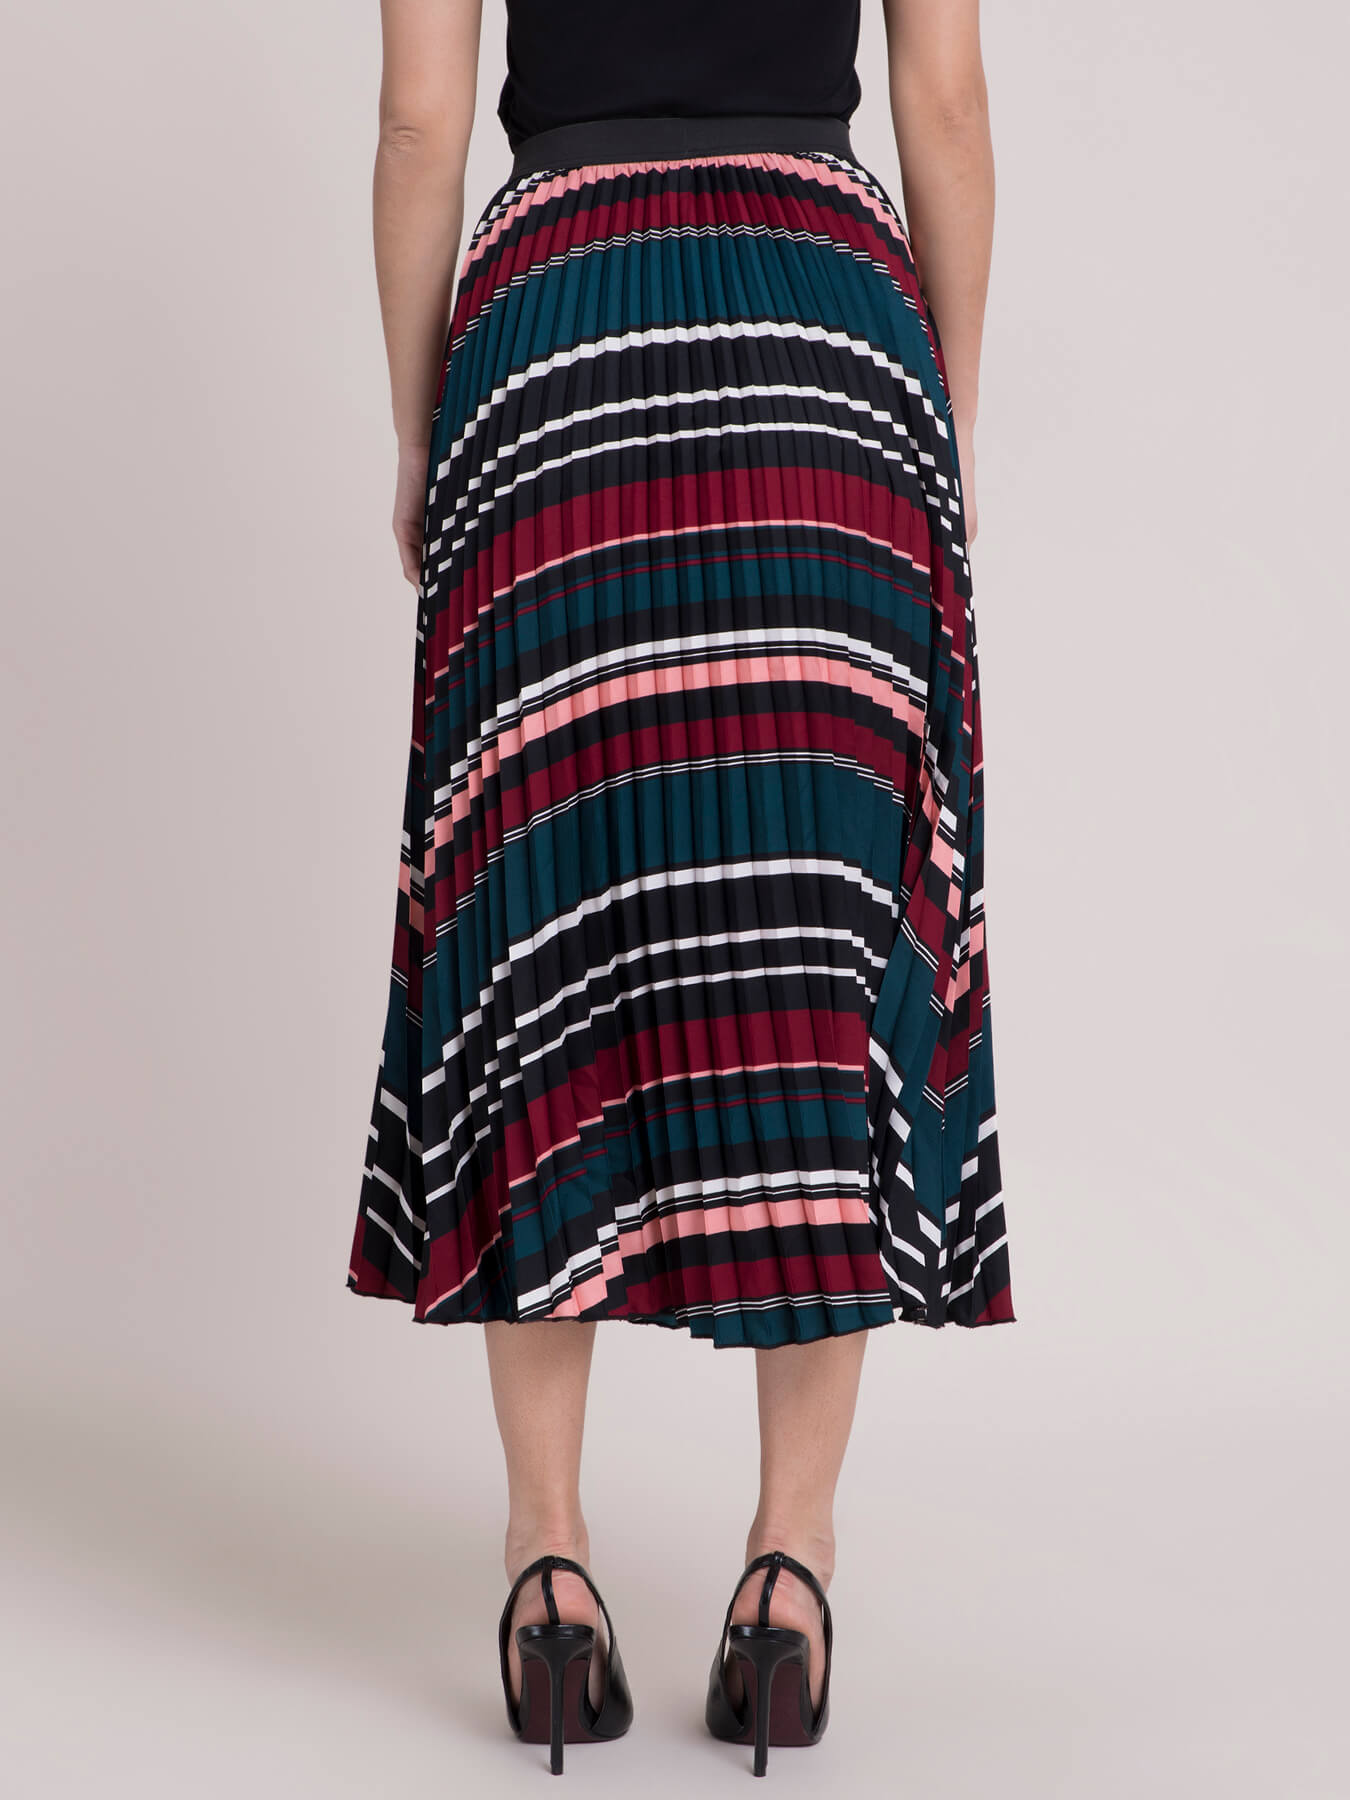 striped skirt multi coloured